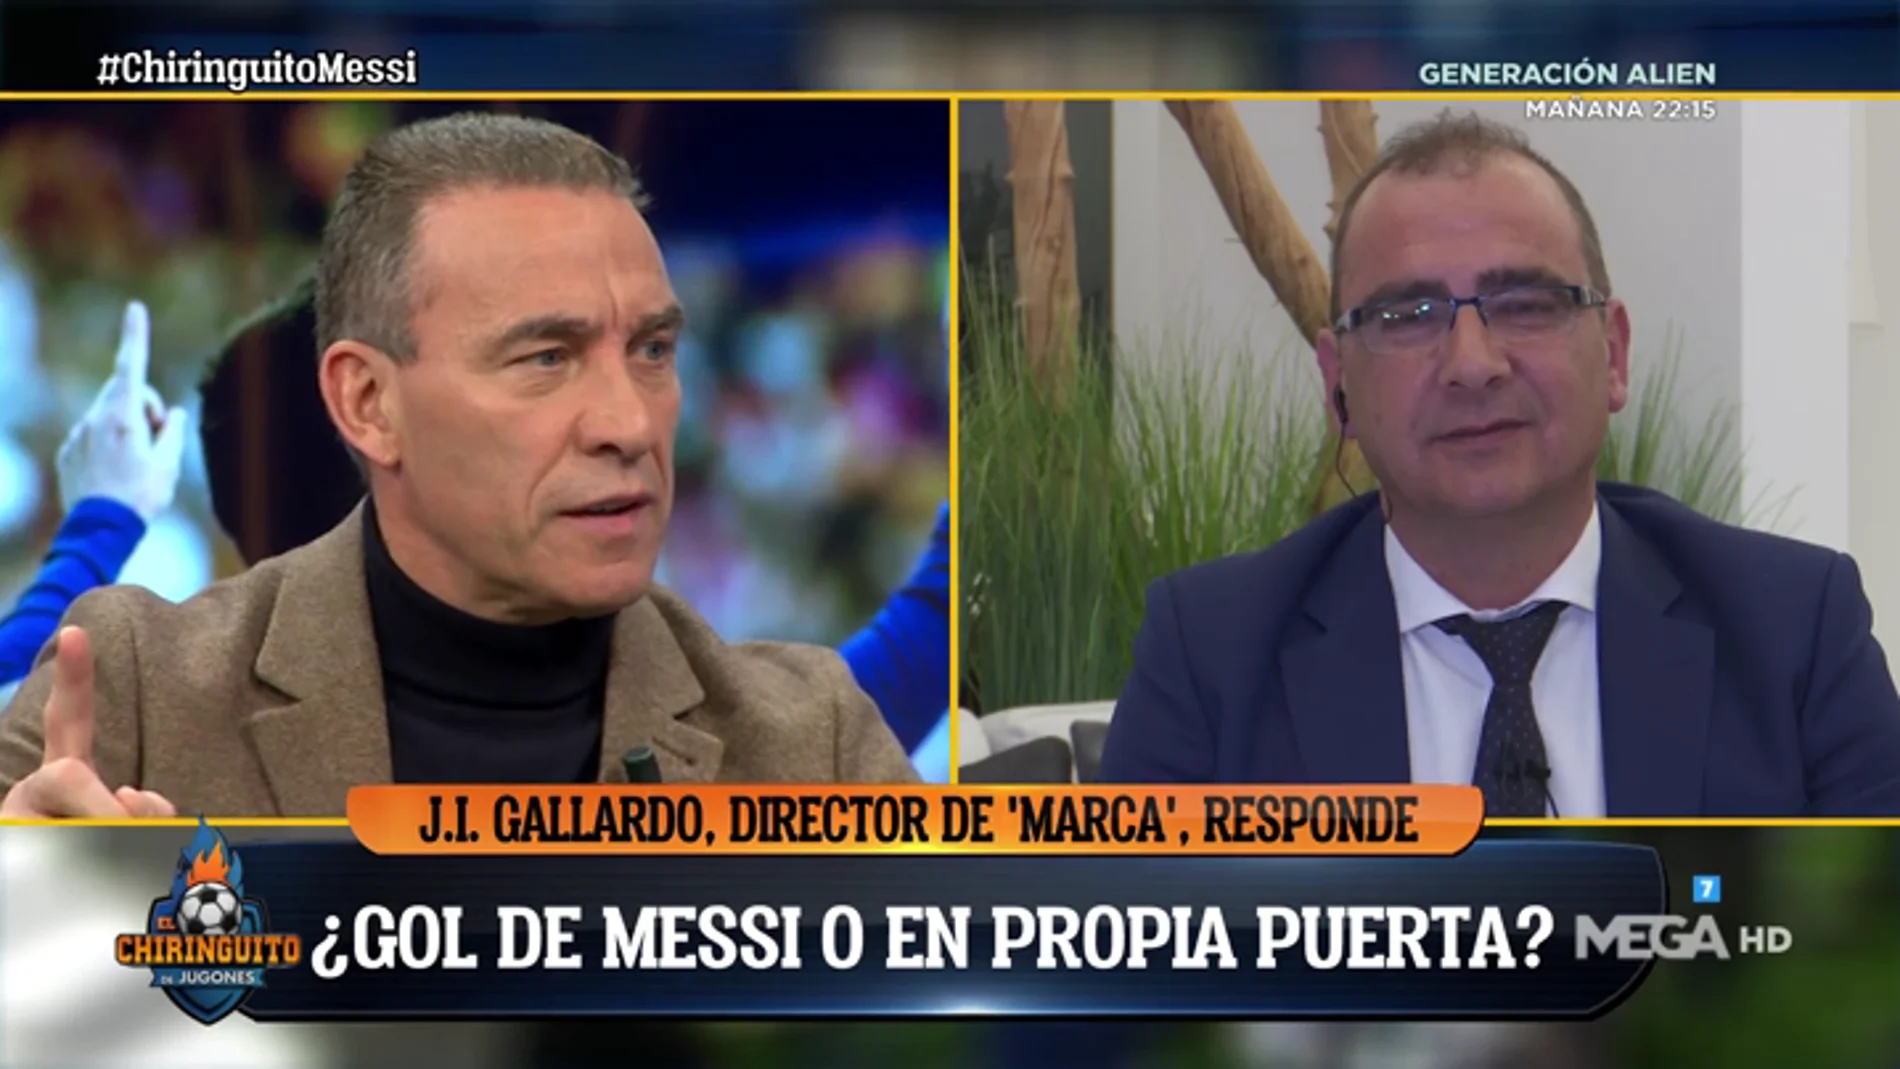 Los tertulianos de El Chiringuito se 'mojan': ¿Gol de Messi o gol en propia puerta? 